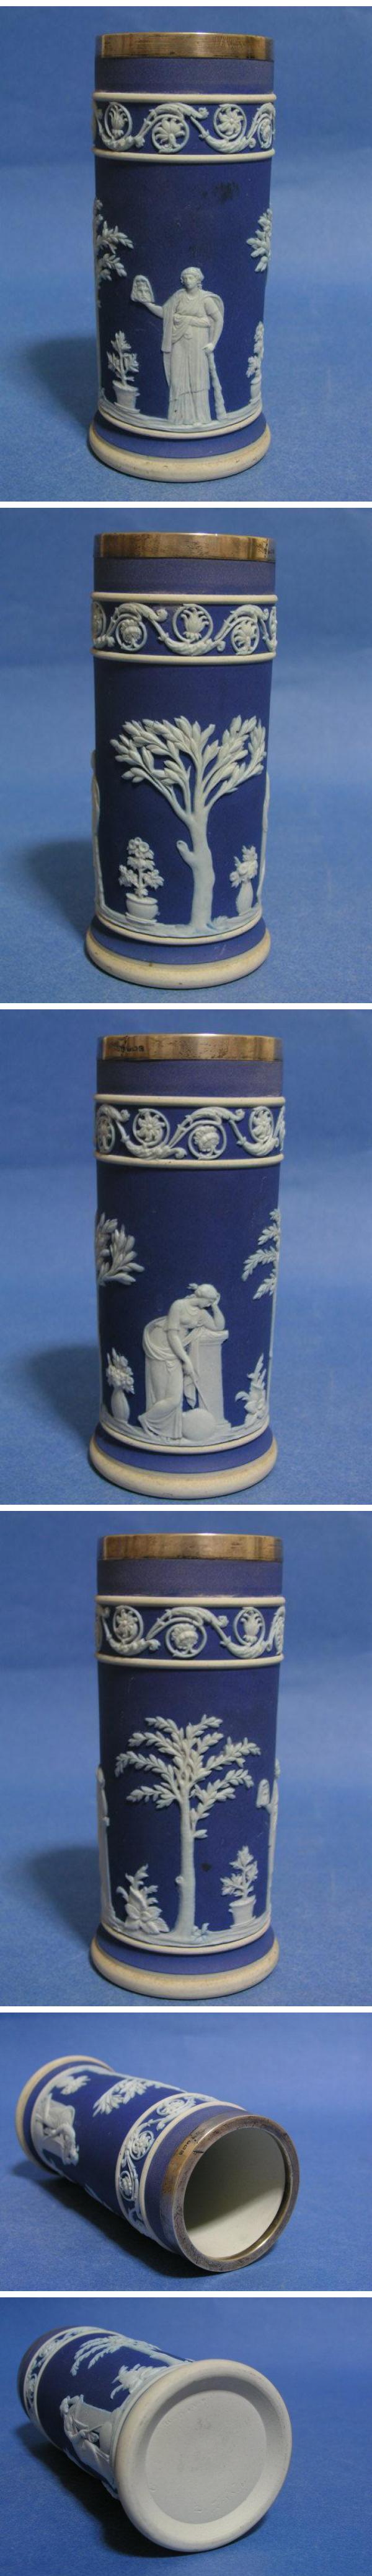 【お取寄せ】◎1910年代 ウェッジウッド 青色を被せた白のジャスパー 円筒形花瓶 「女神」◎ri ウェッジウッド